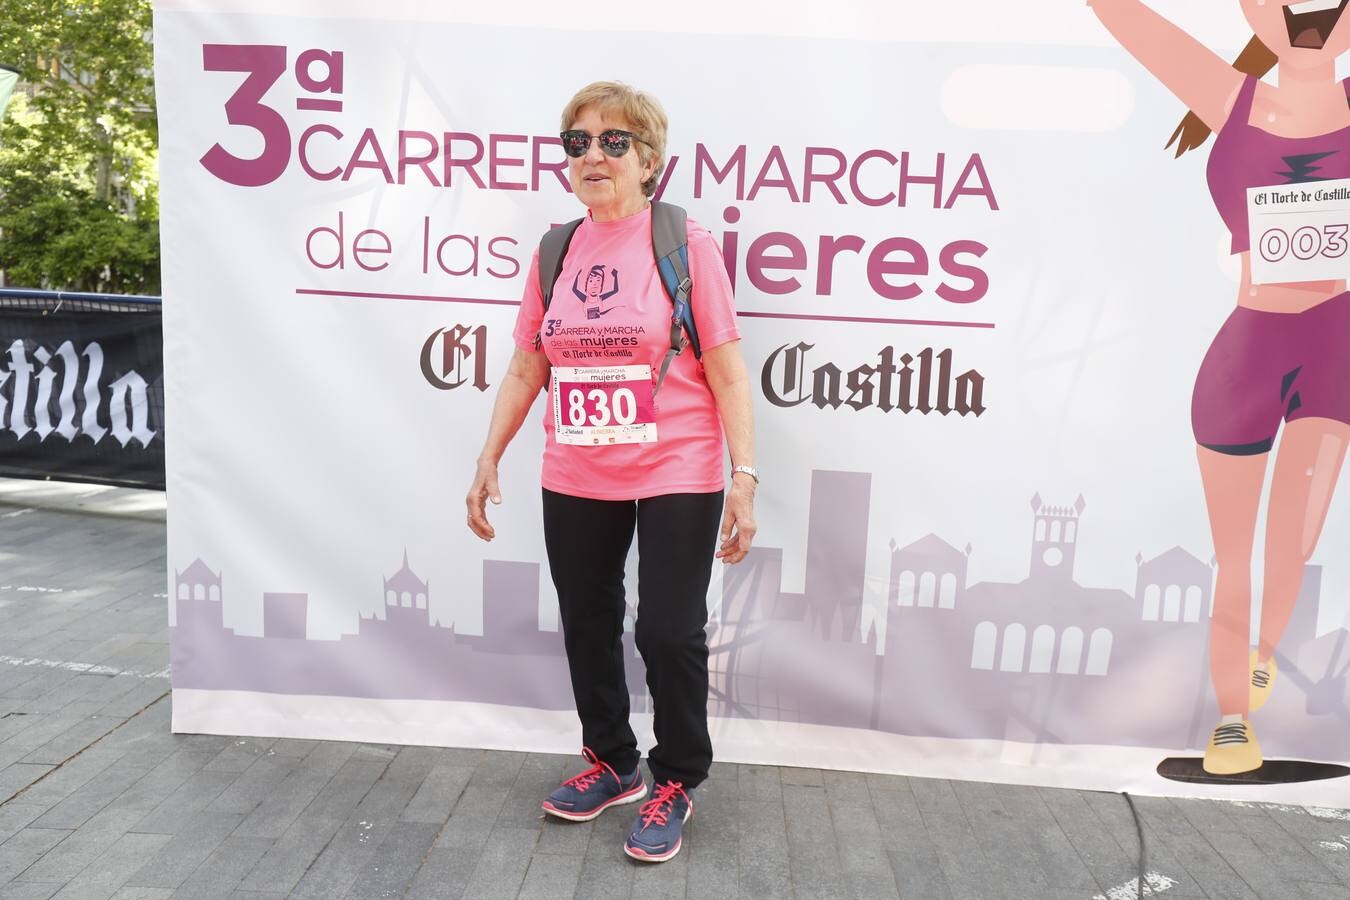 Fotos: Participantes en la III Carrera y Marcha de las Mujeres (1)